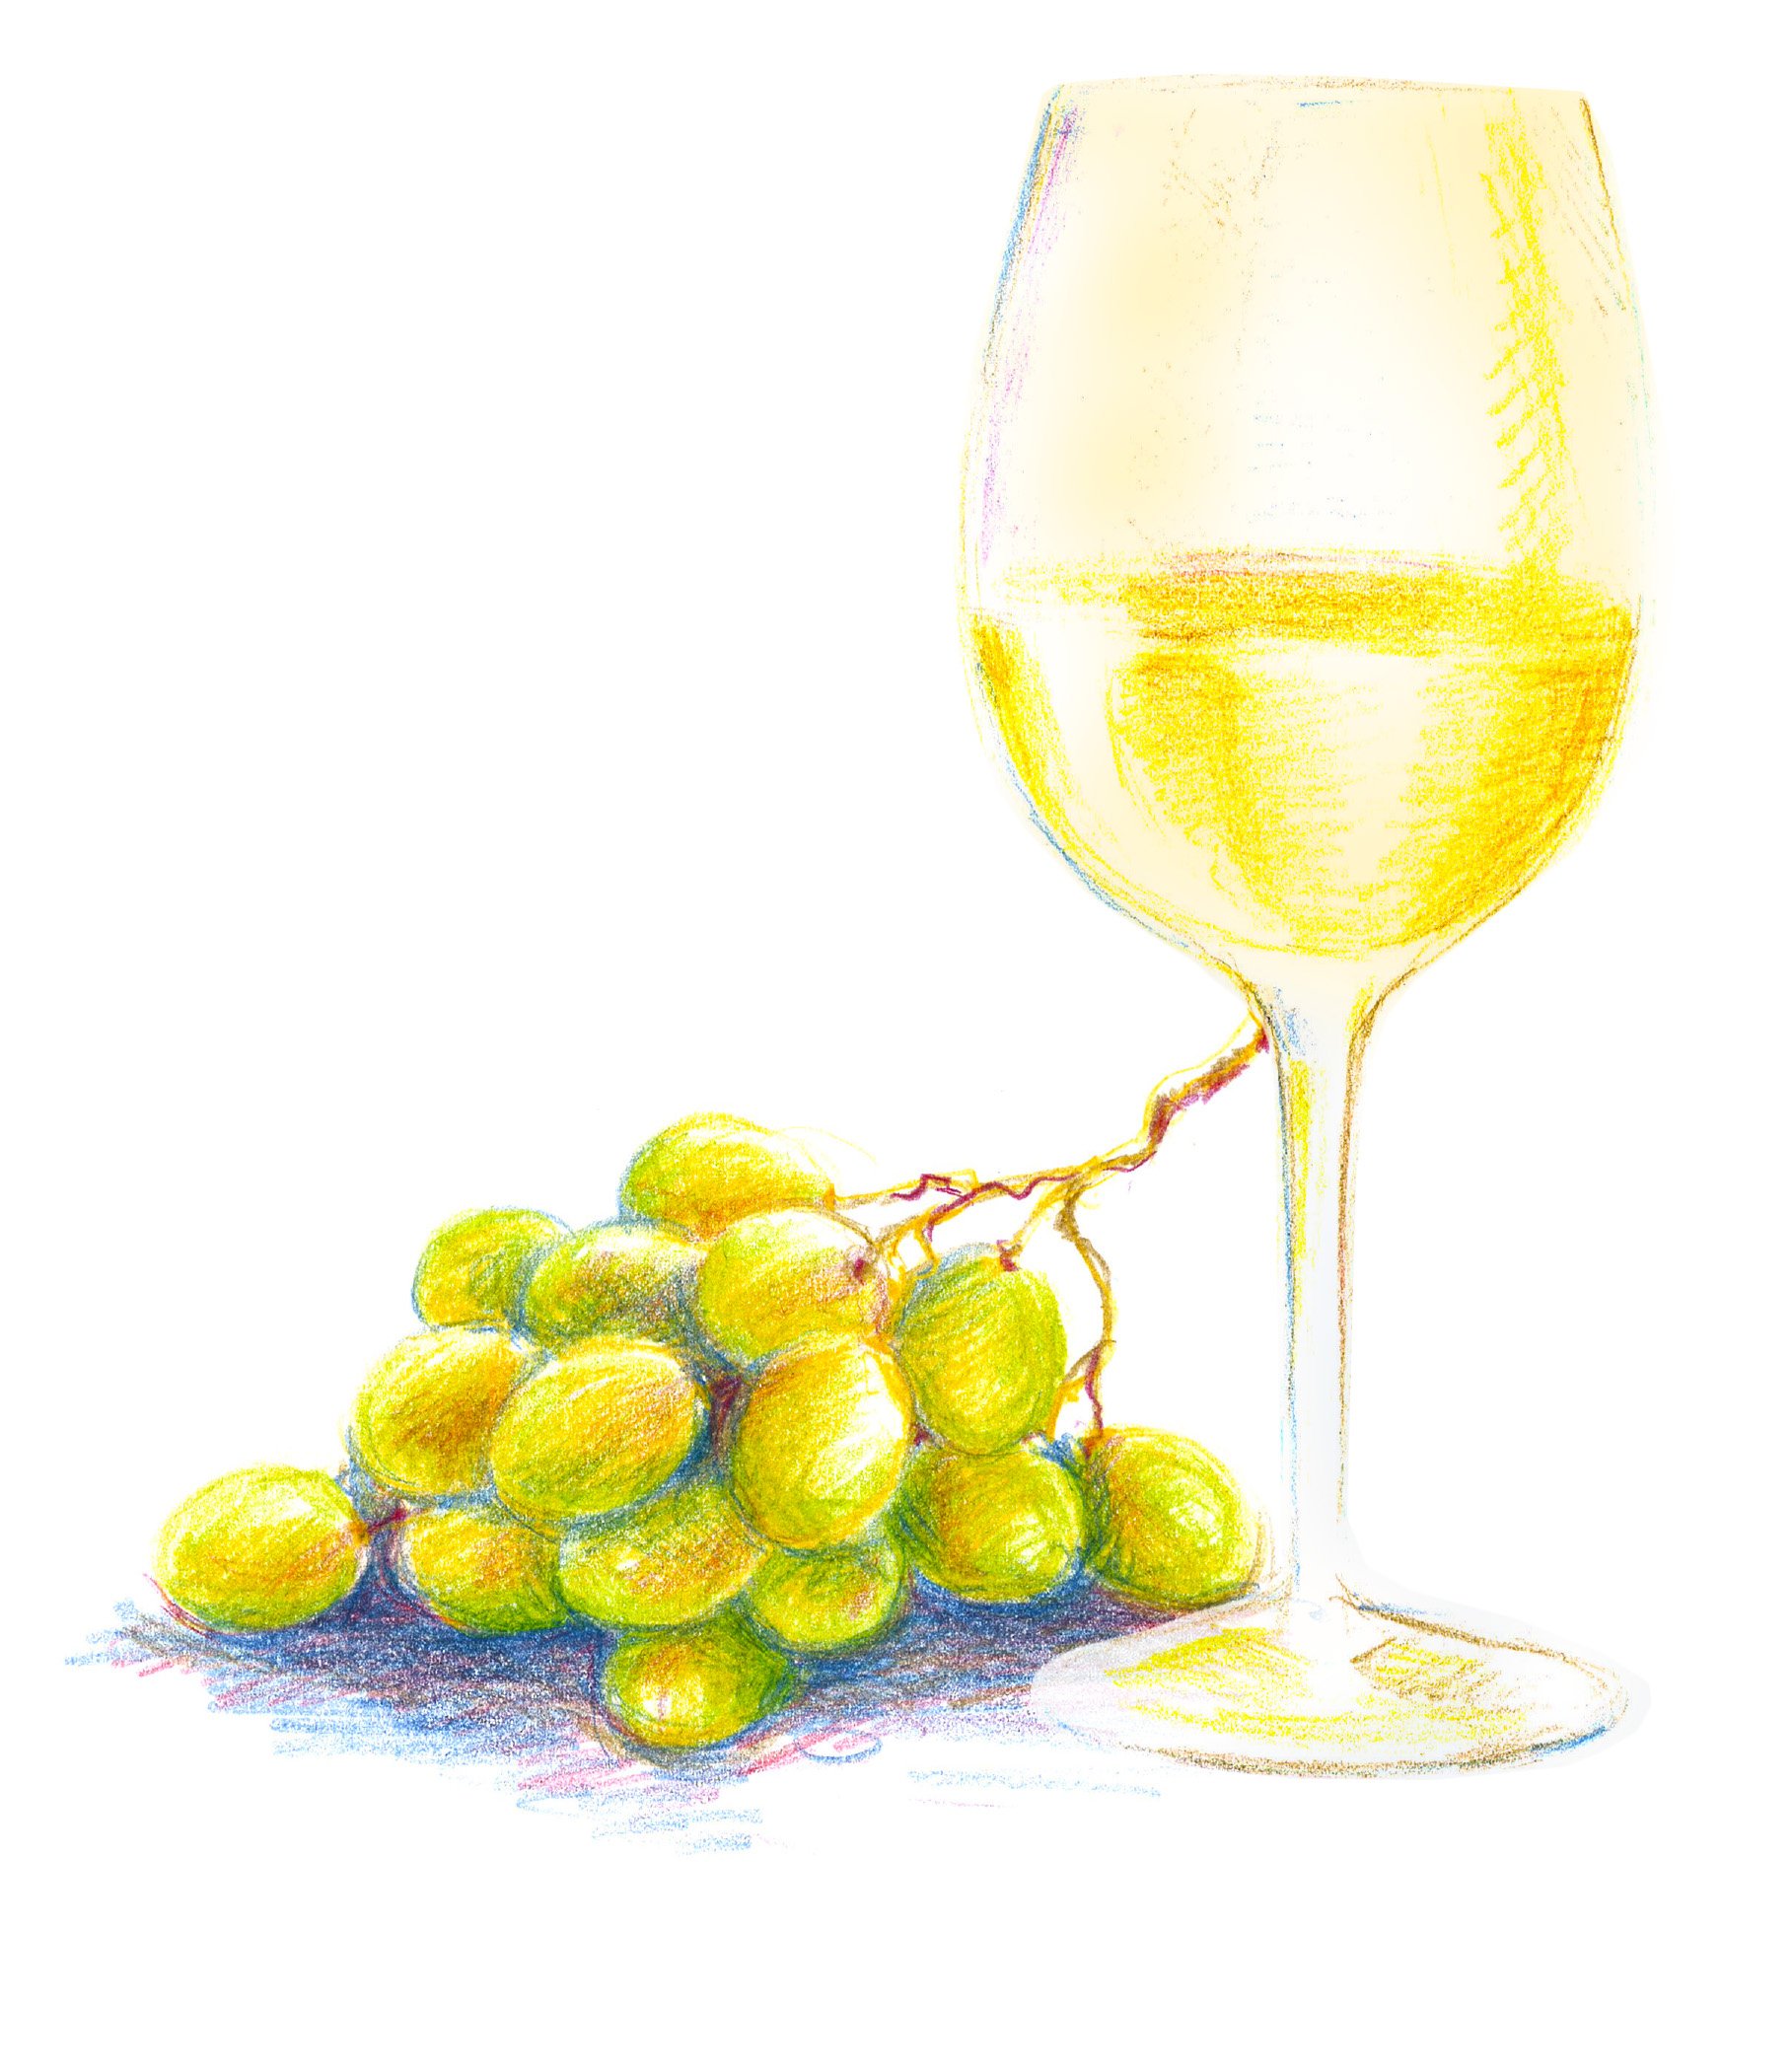 LG fridge illos_AJensen-wine_grapes_v1.jpg